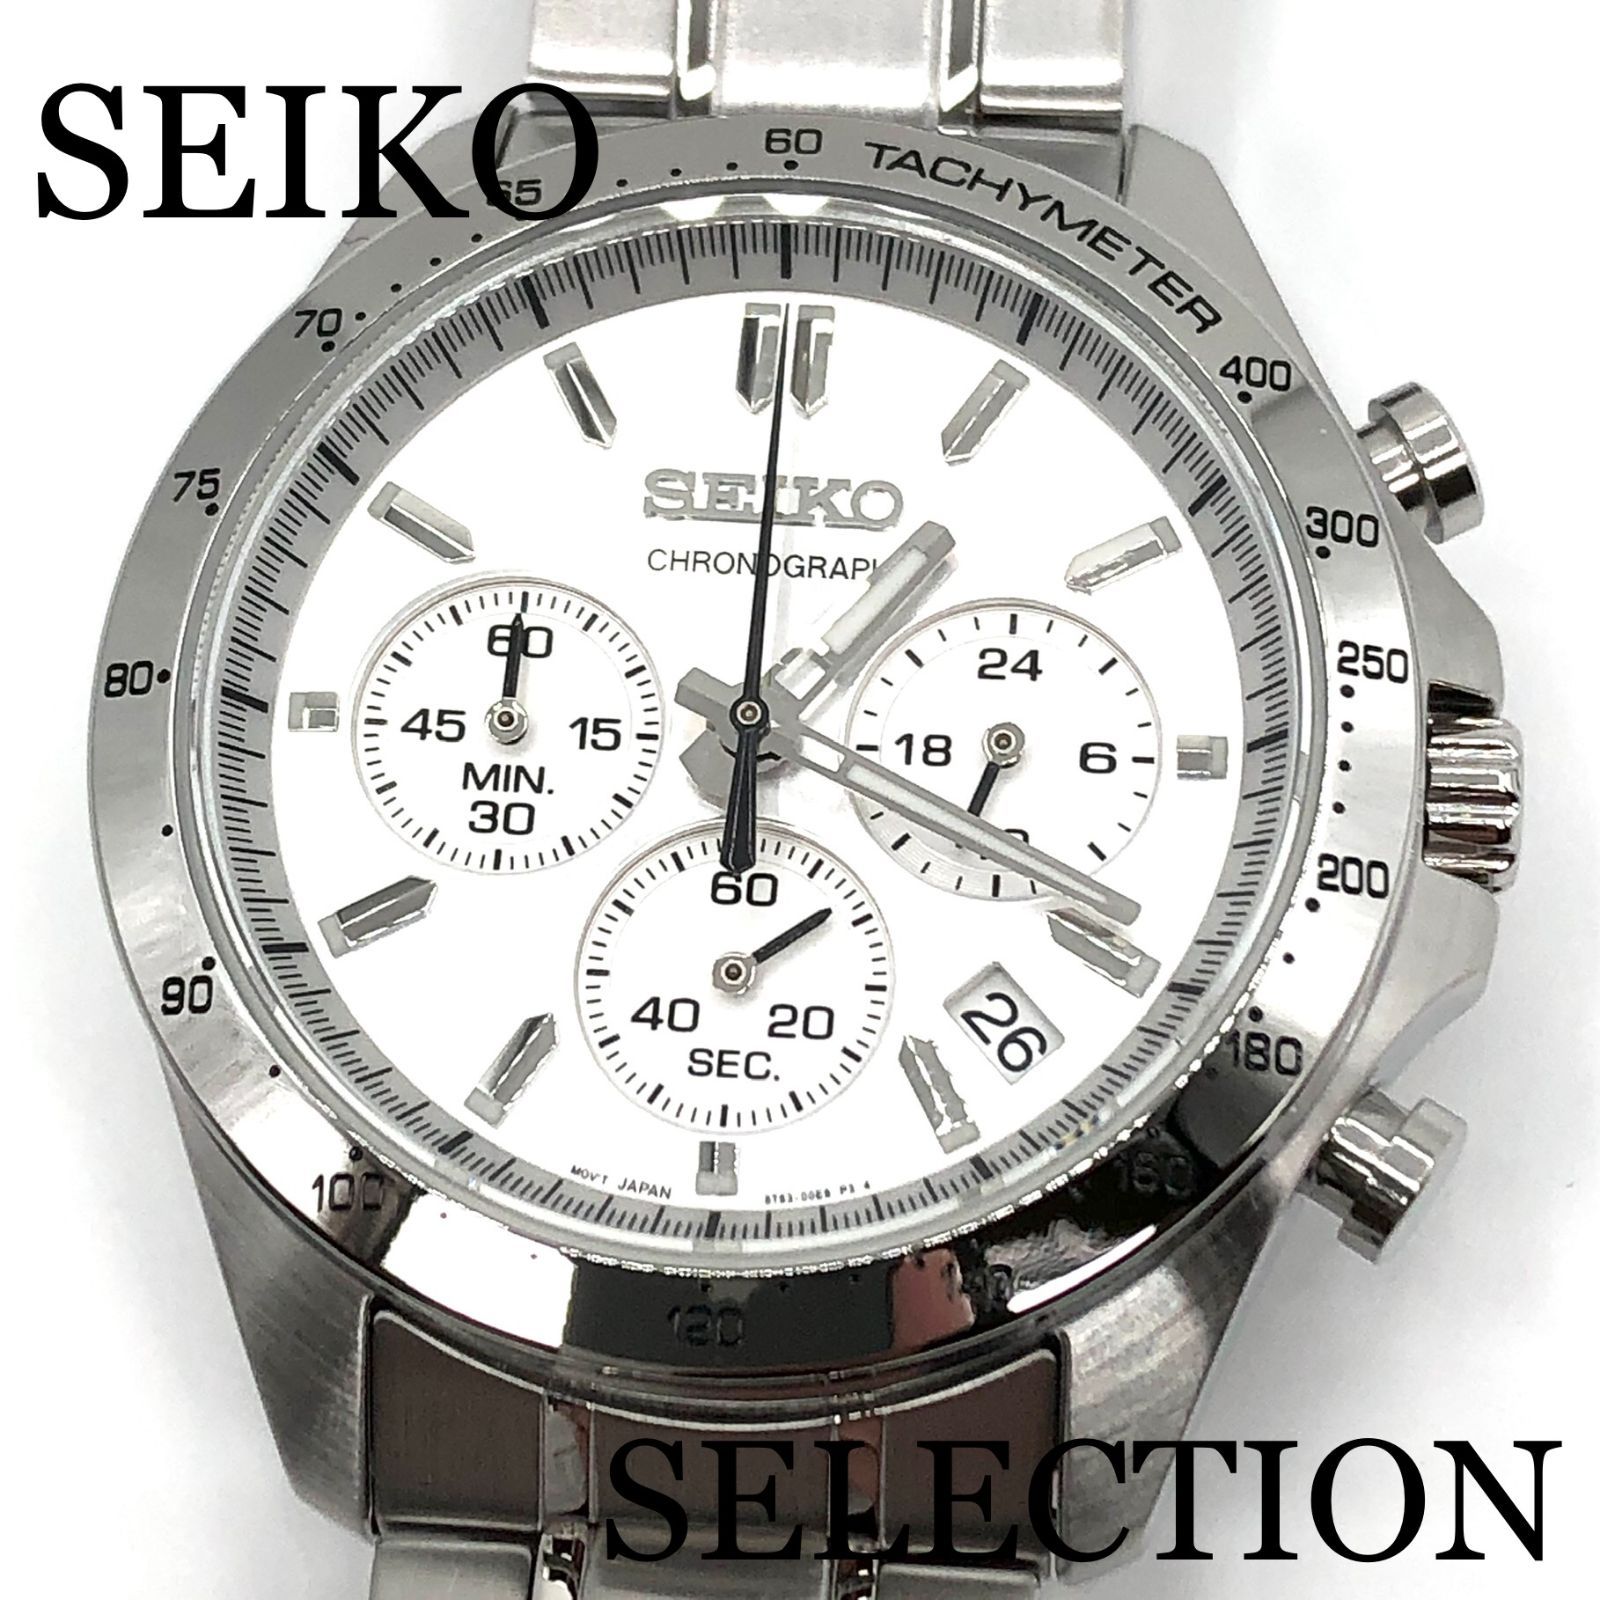 新品正規品『SEIKO SELECTION』セイコー セレクション クロノグラフ